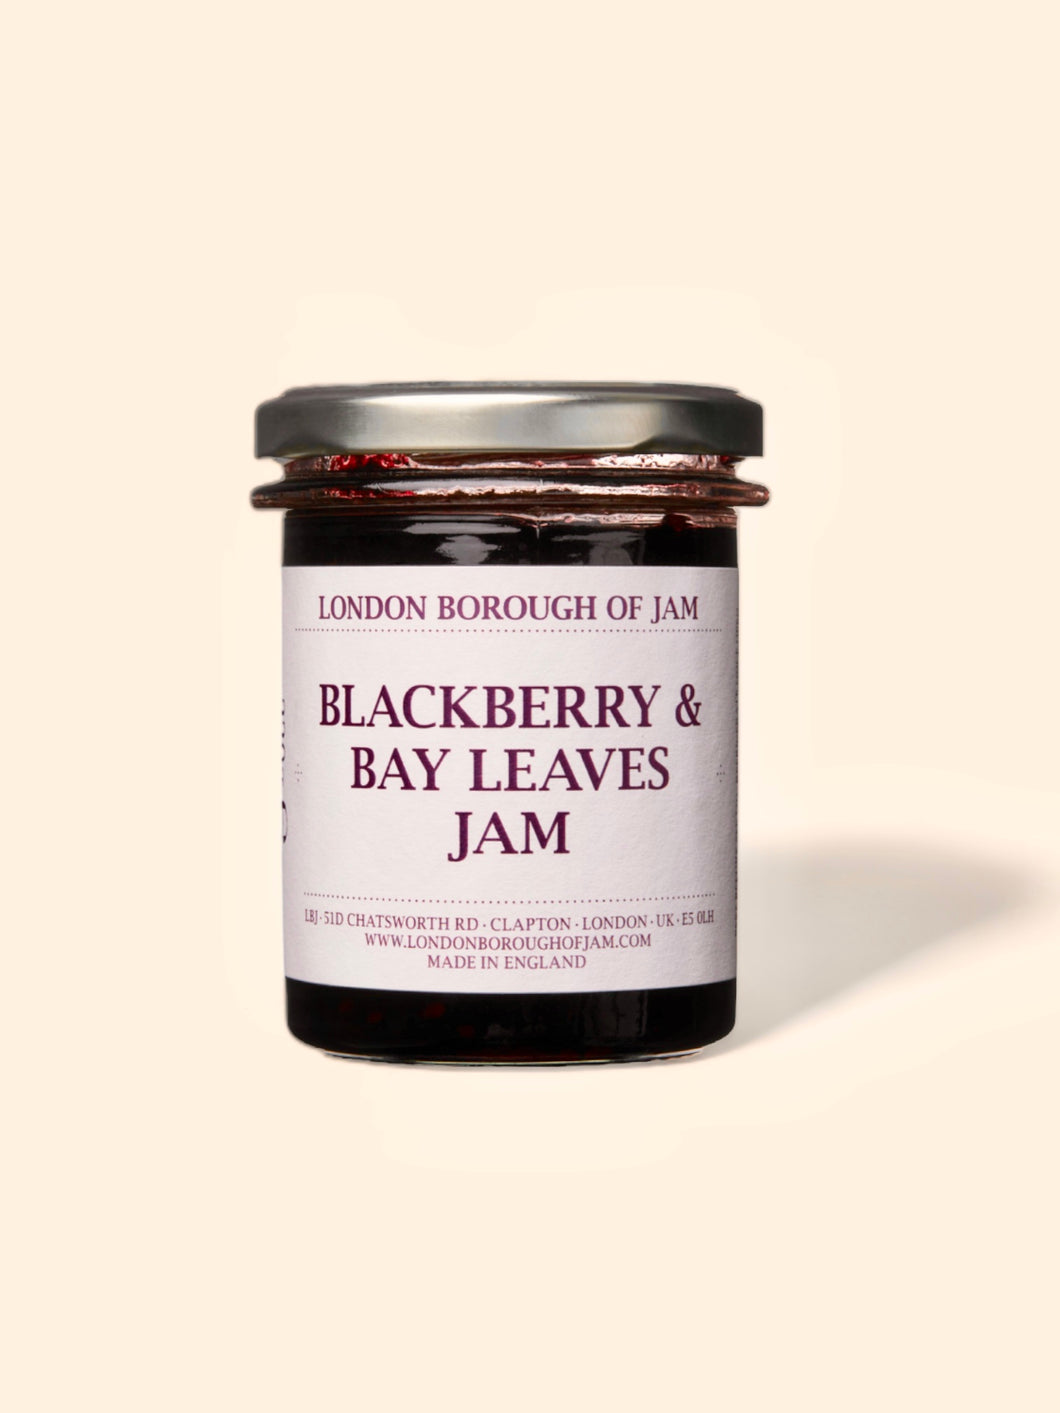 Blackberry & Bay Leaves Jam